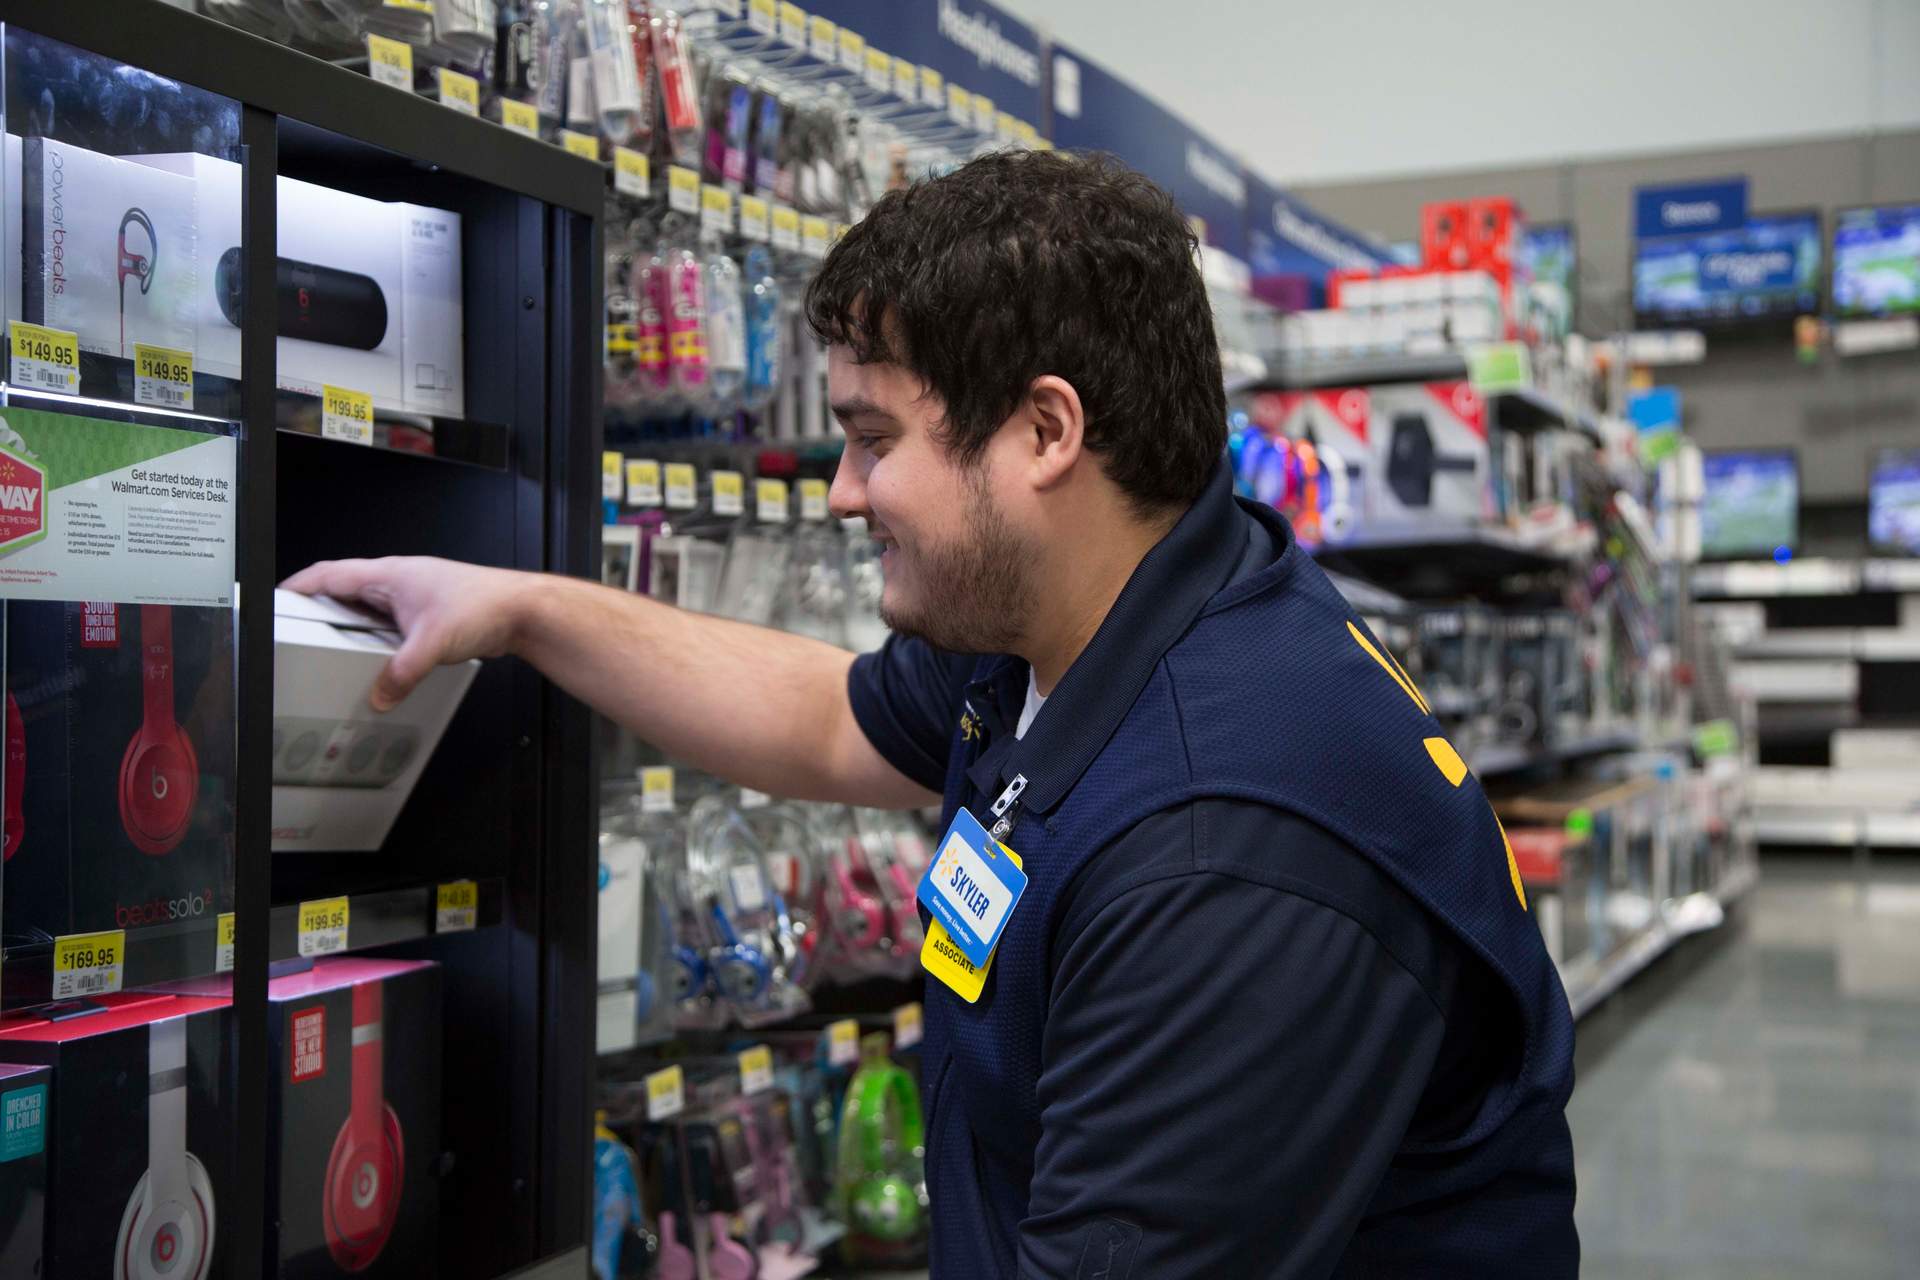 Walmart ganó 417,6 millones de euros en su tercer trimestre frente a pérdidas y mejora previsiones anuales